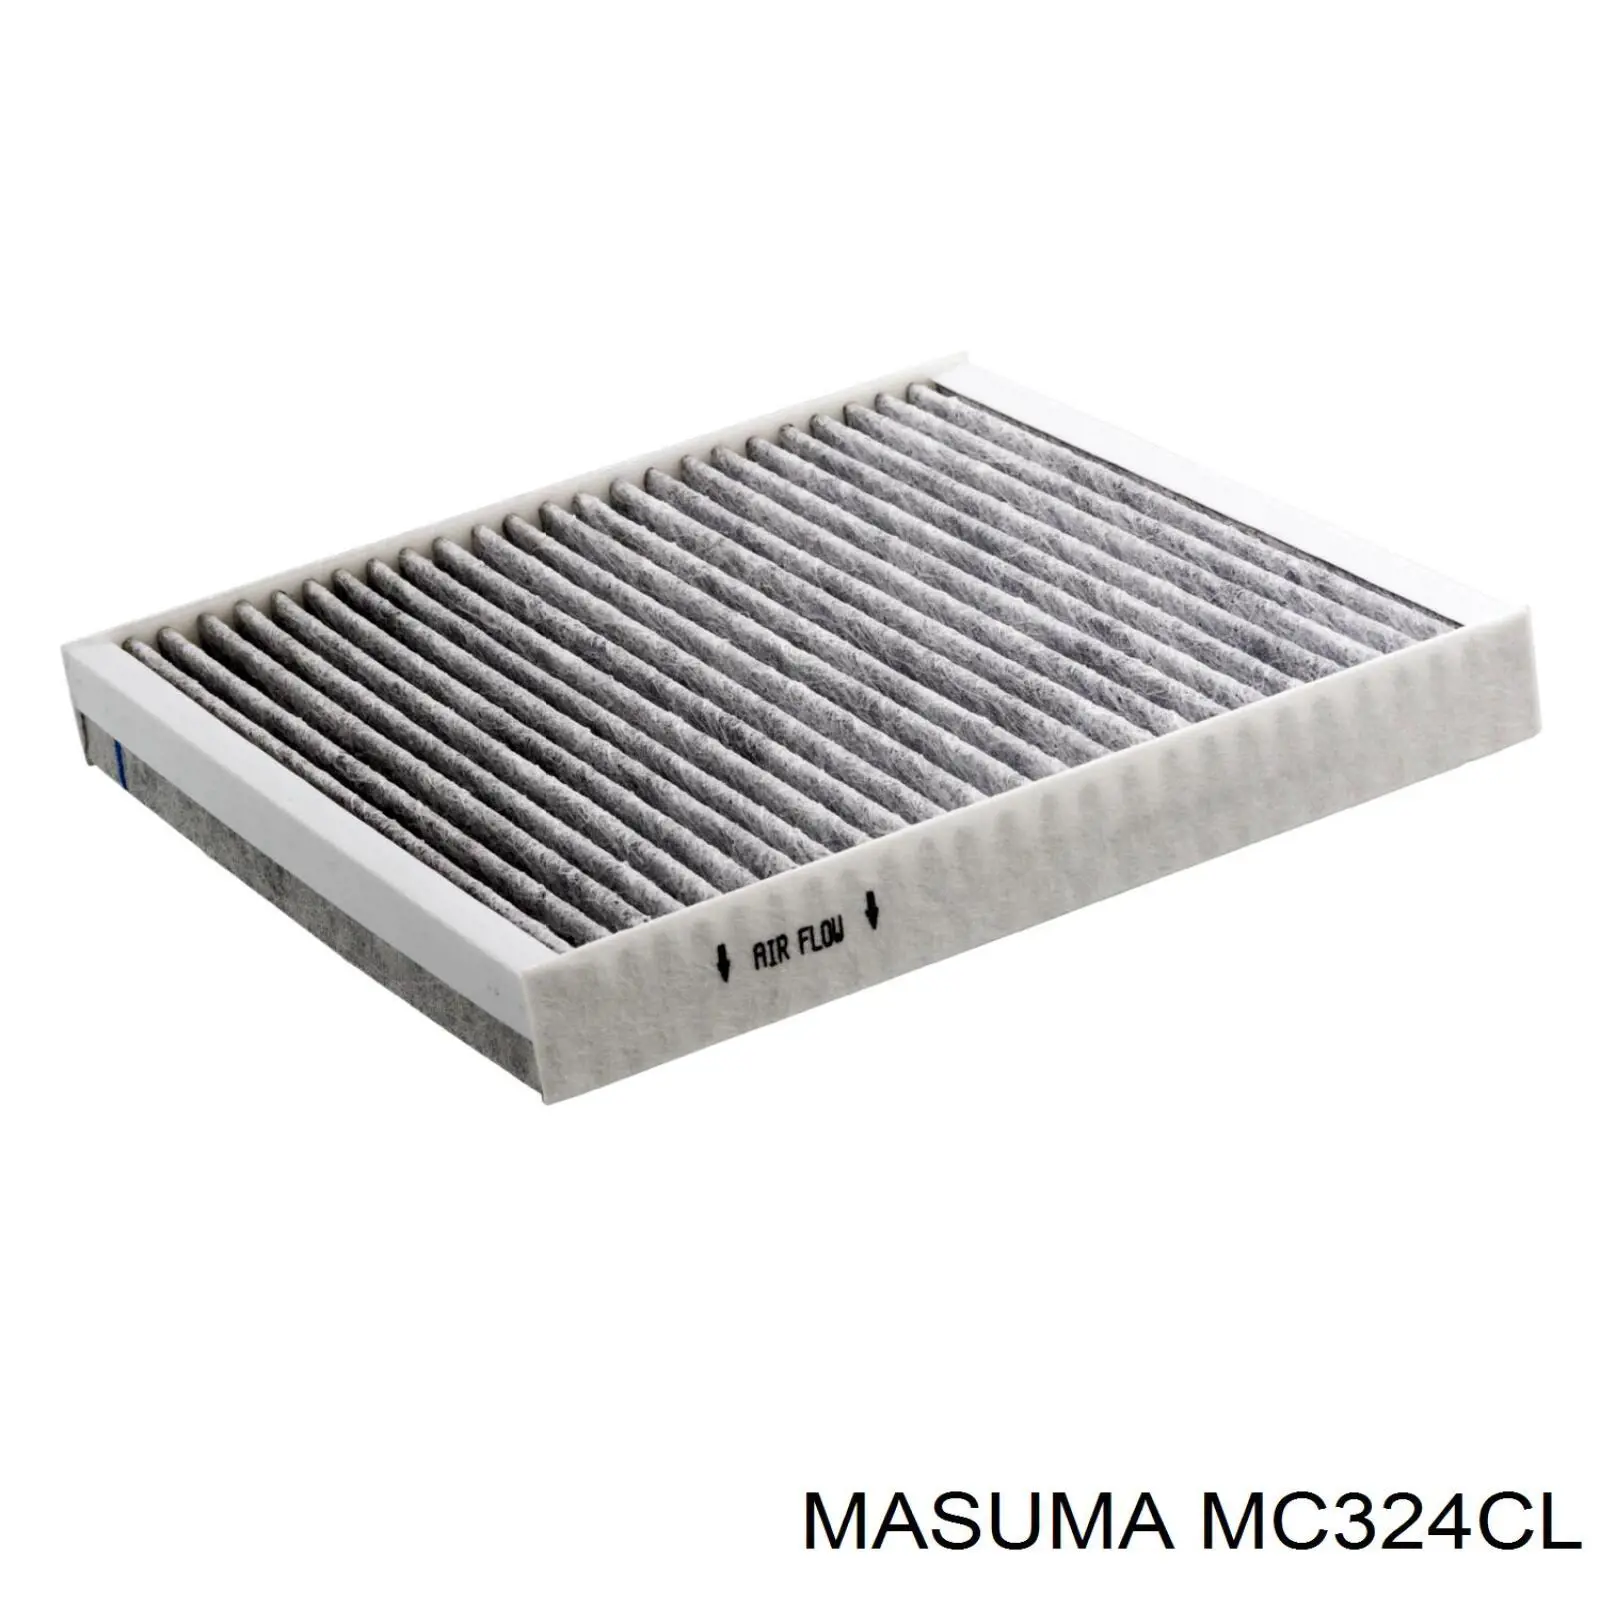 MC324CL Masuma filtro habitáculo